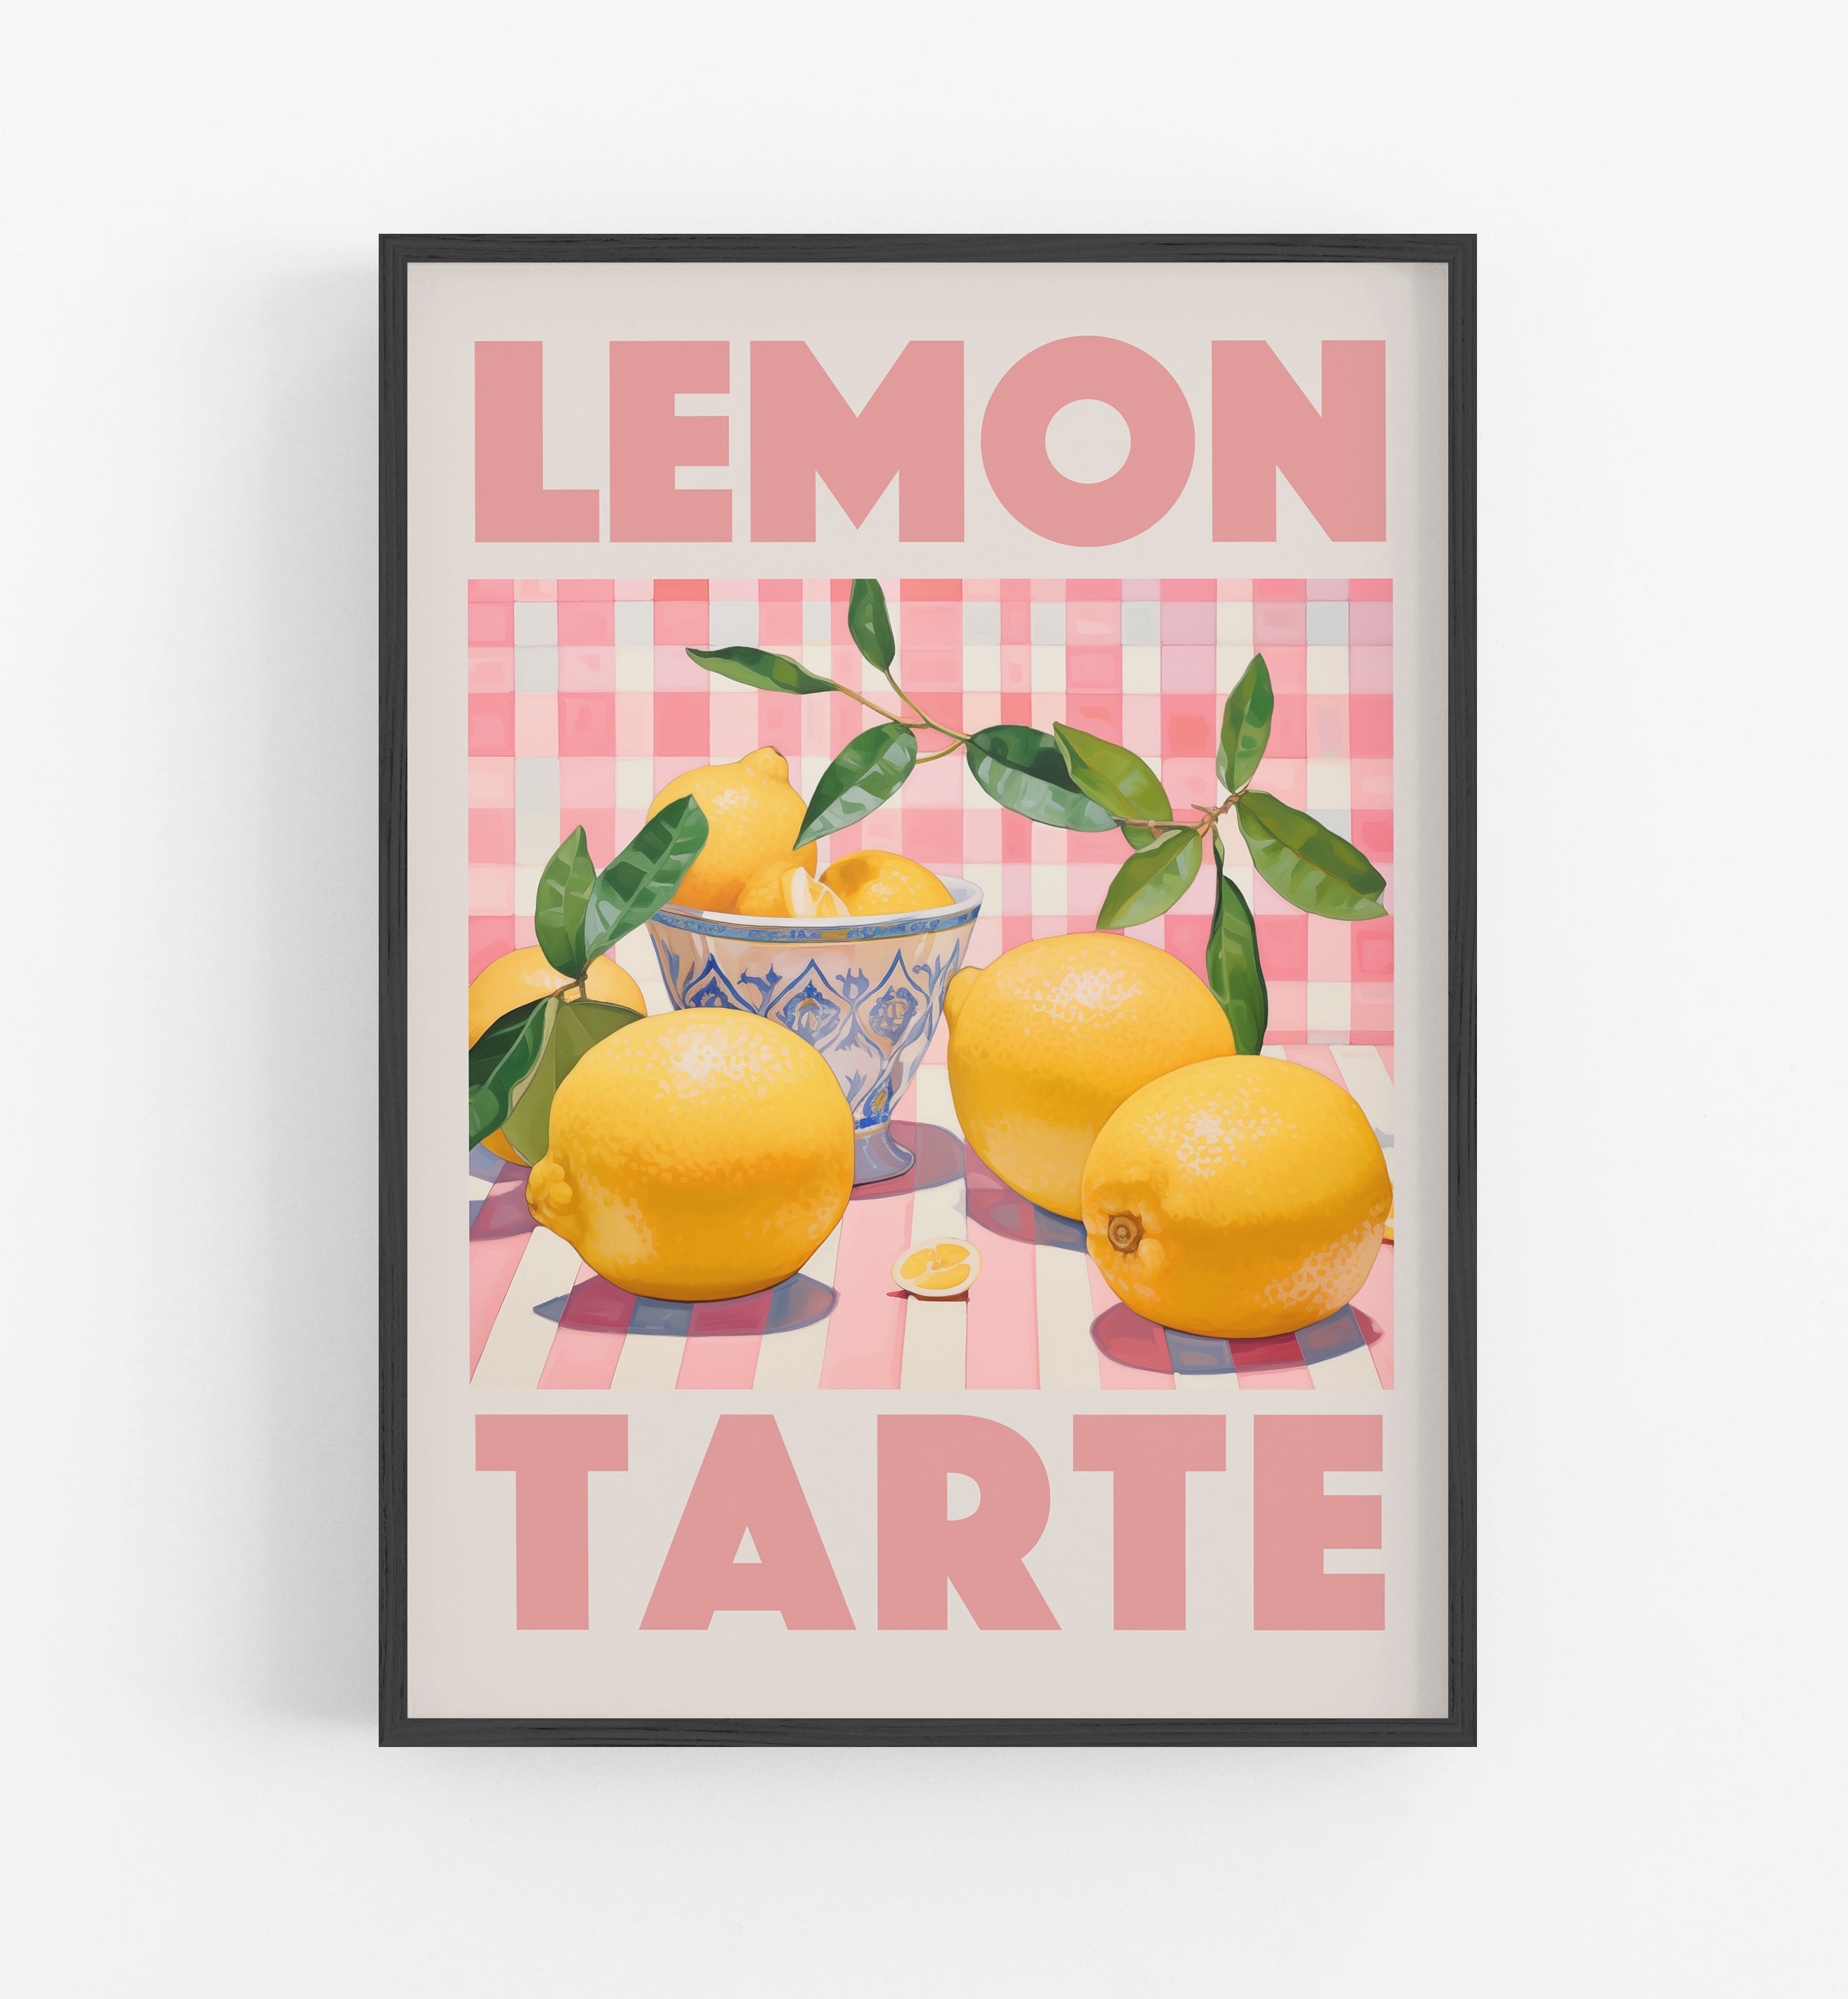 Lemon Tarte